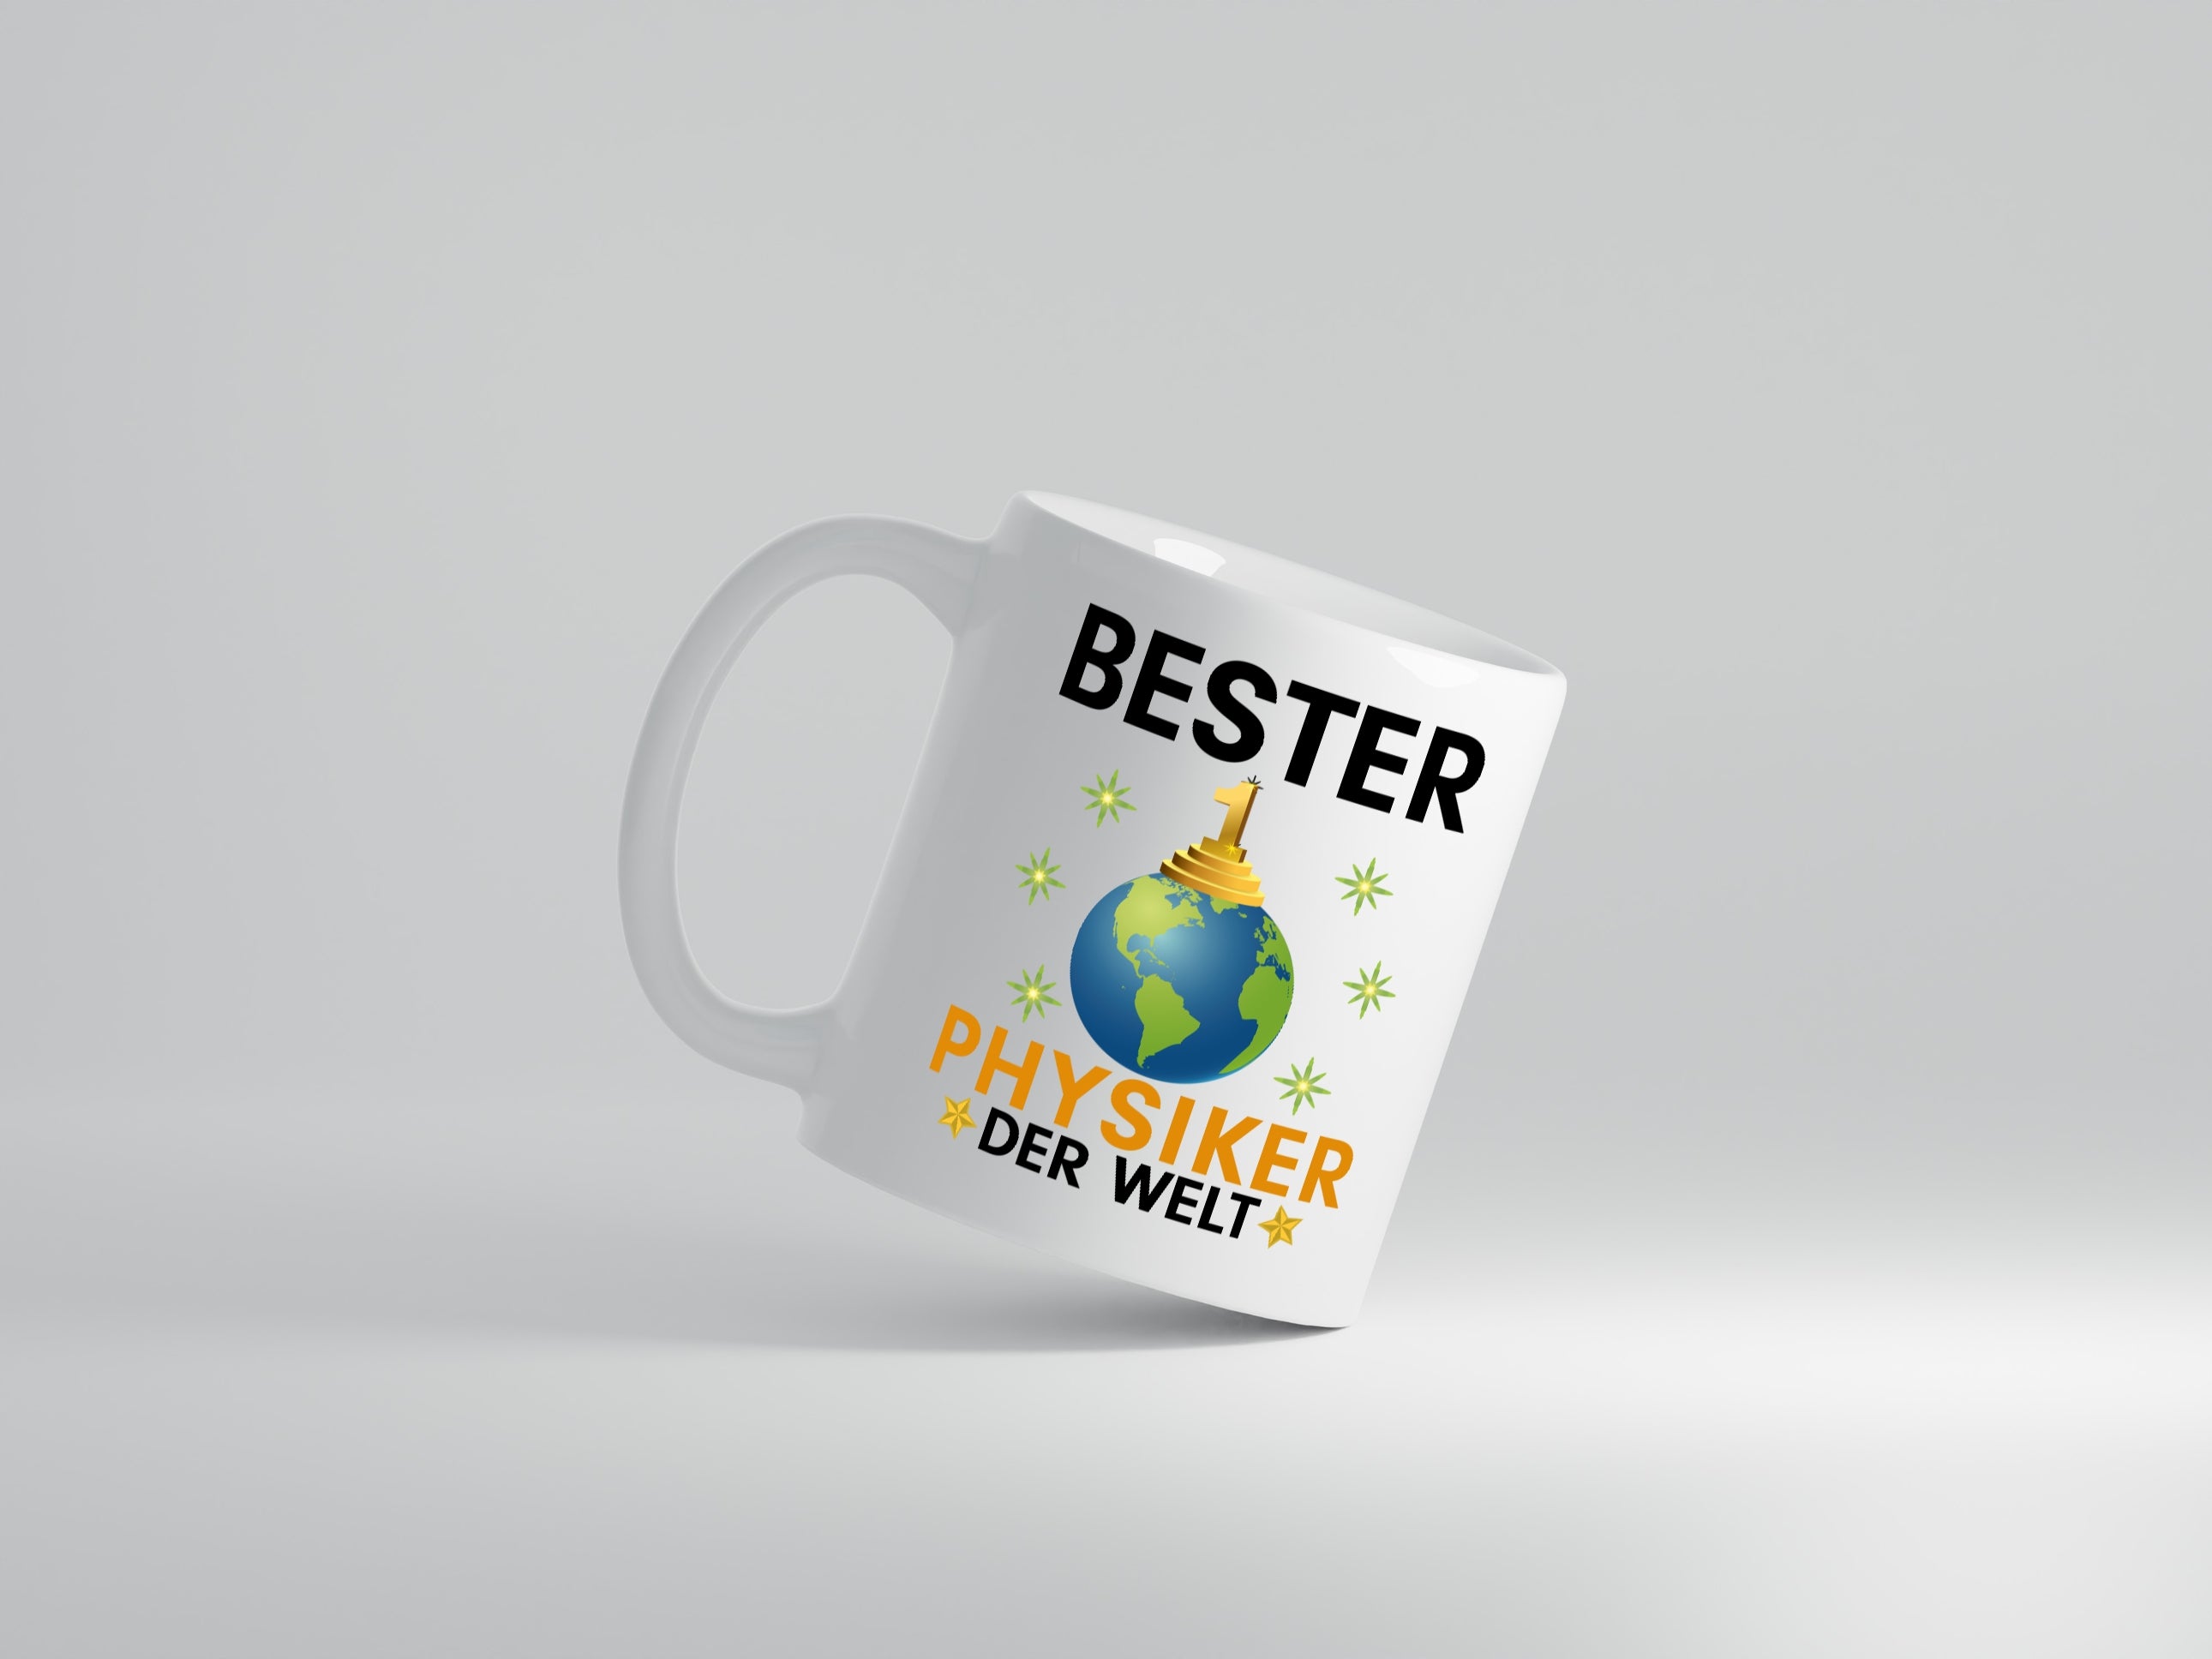 Welt Bester Physiker | Physik - Tasse Weiß - Kaffeetasse / Geschenk / Familie